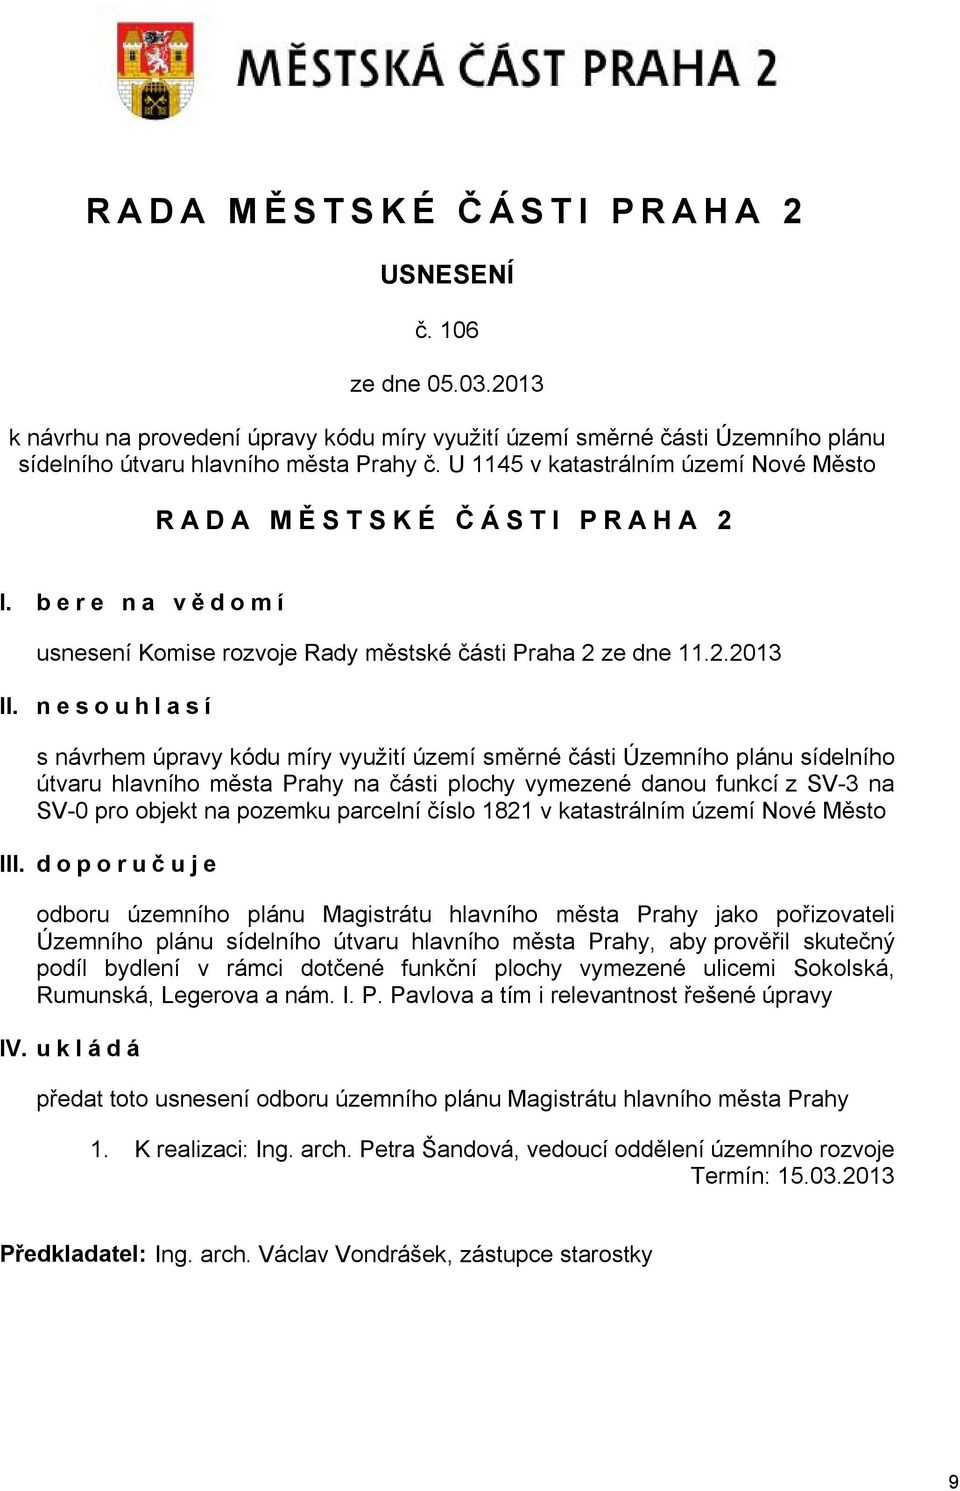 nesouhlasí s návrhem úpravy kódu míry využití území směrné části Územního plánu sídelního útvaru hlavního města Prahy na části plochy vymezené danou funkcí z SV-3 na SV-0 pro objekt na pozemku